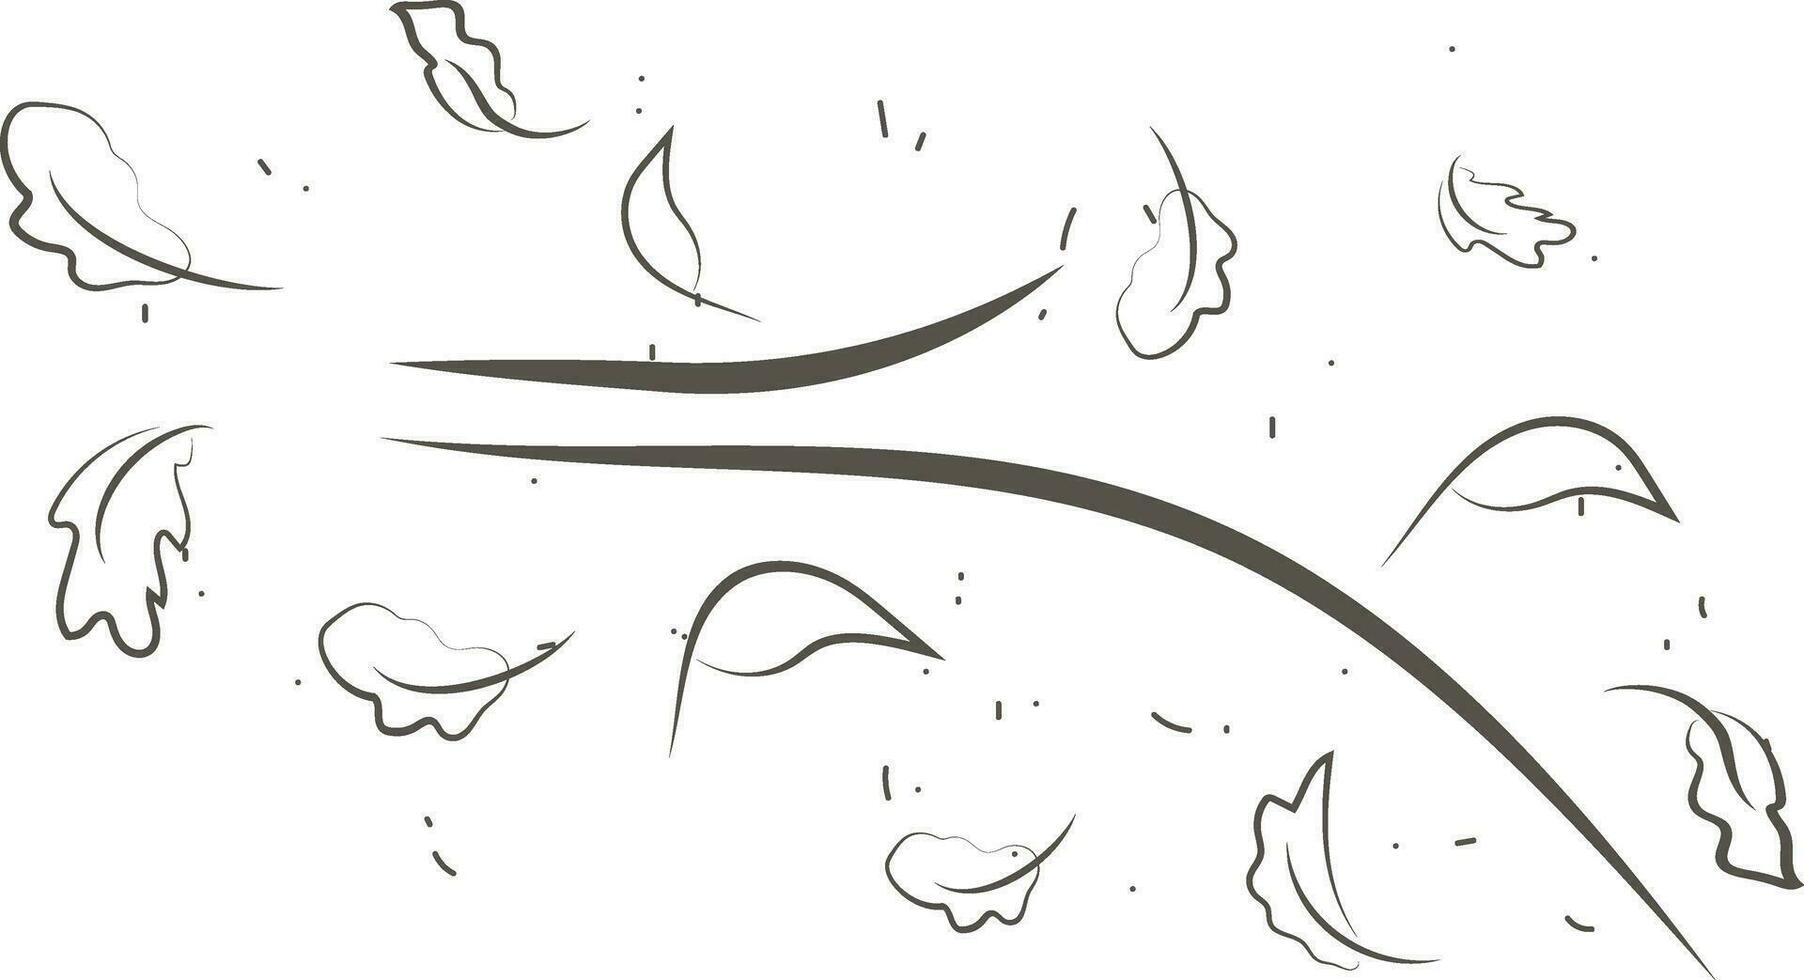 esboço desenhando do uma respiração do vento.vento golpe conjunto dentro linha estilo.onda fluindo ilustração com mão desenhado rabisco desenho animado estilo. vetor